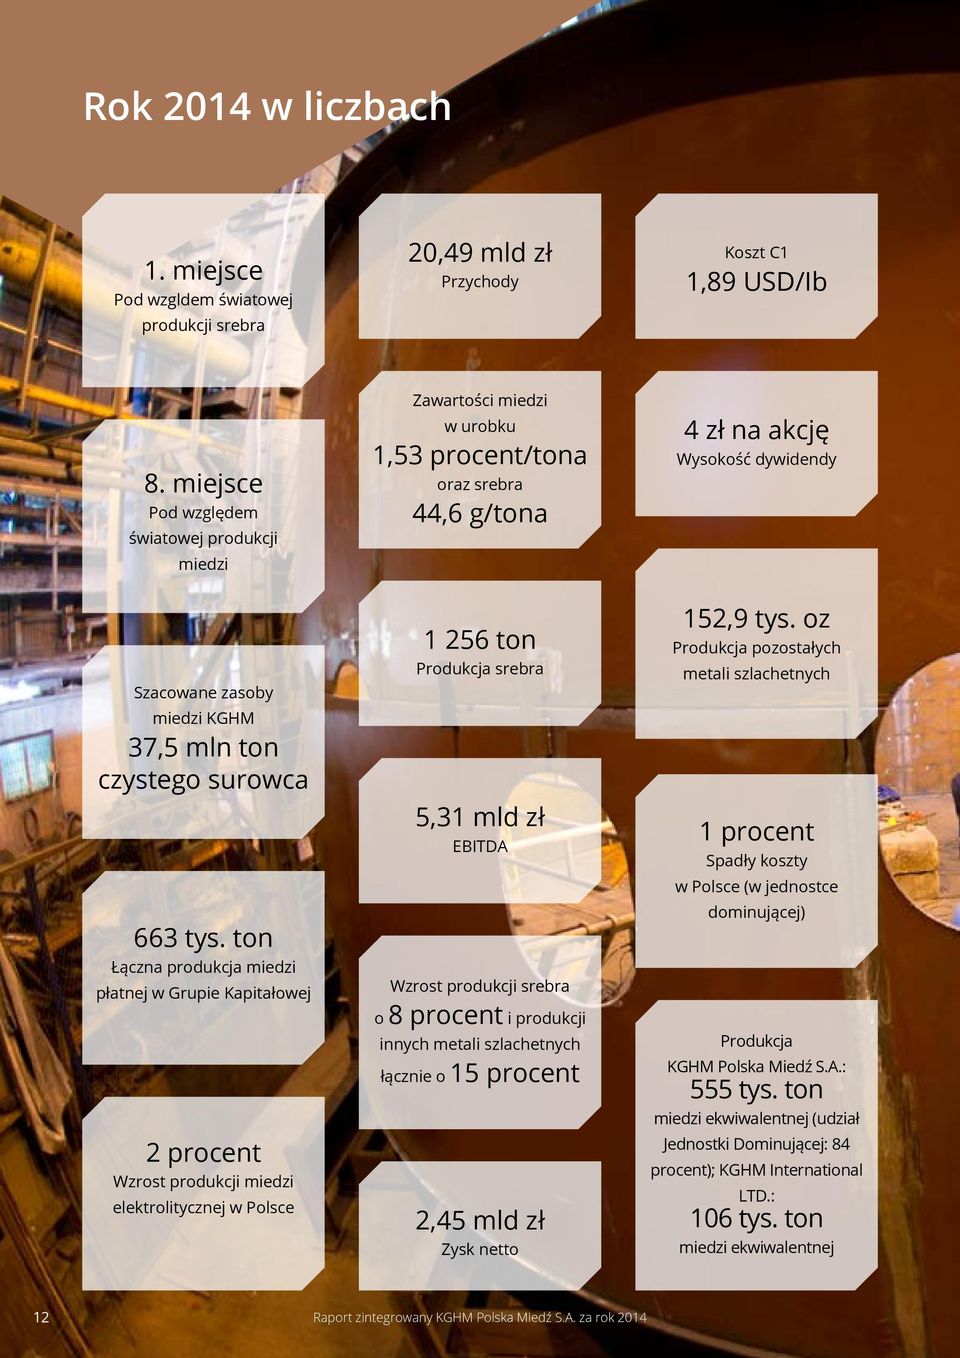 ton Łączna produkcja miedzi płatnej w Grupie Kapitałowej 2 procent Wzrost produkcji miedzi elektrolitycznej w Polsce Zawartości miedzi w urobku 1,53 procent/tona oraz srebra 44,6 g/tona 1 256 ton